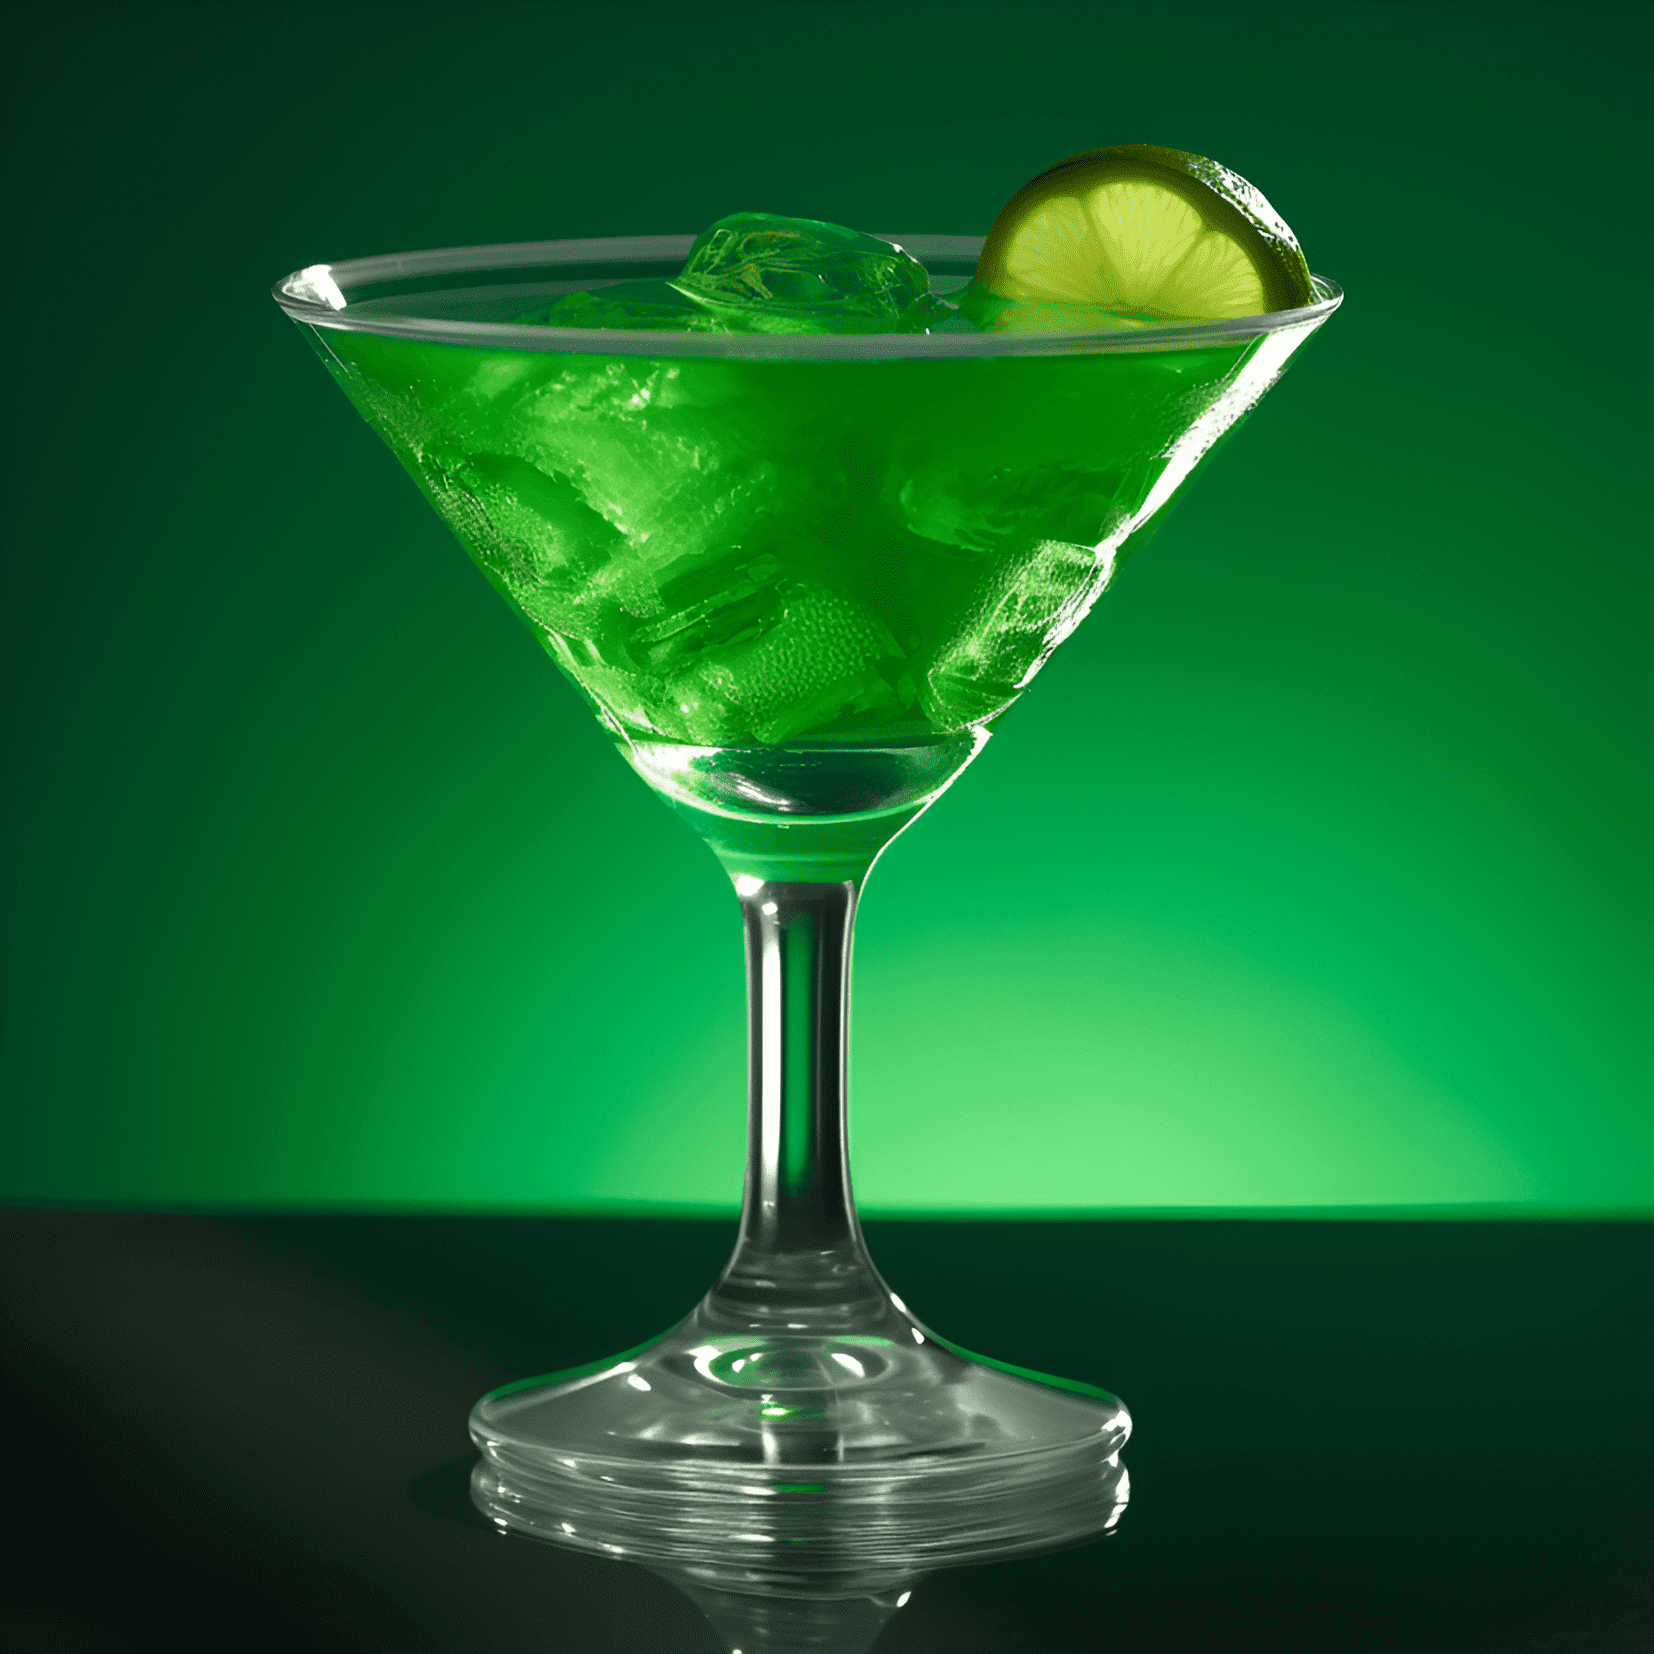 Green Hornet Cóctel Receta - El cóctel Green Hornet es una bebida refrescante, dulce y ligeramente agria con un toque de menta. Tiene un color verde vibrante y una textura suave y aterciopelada.